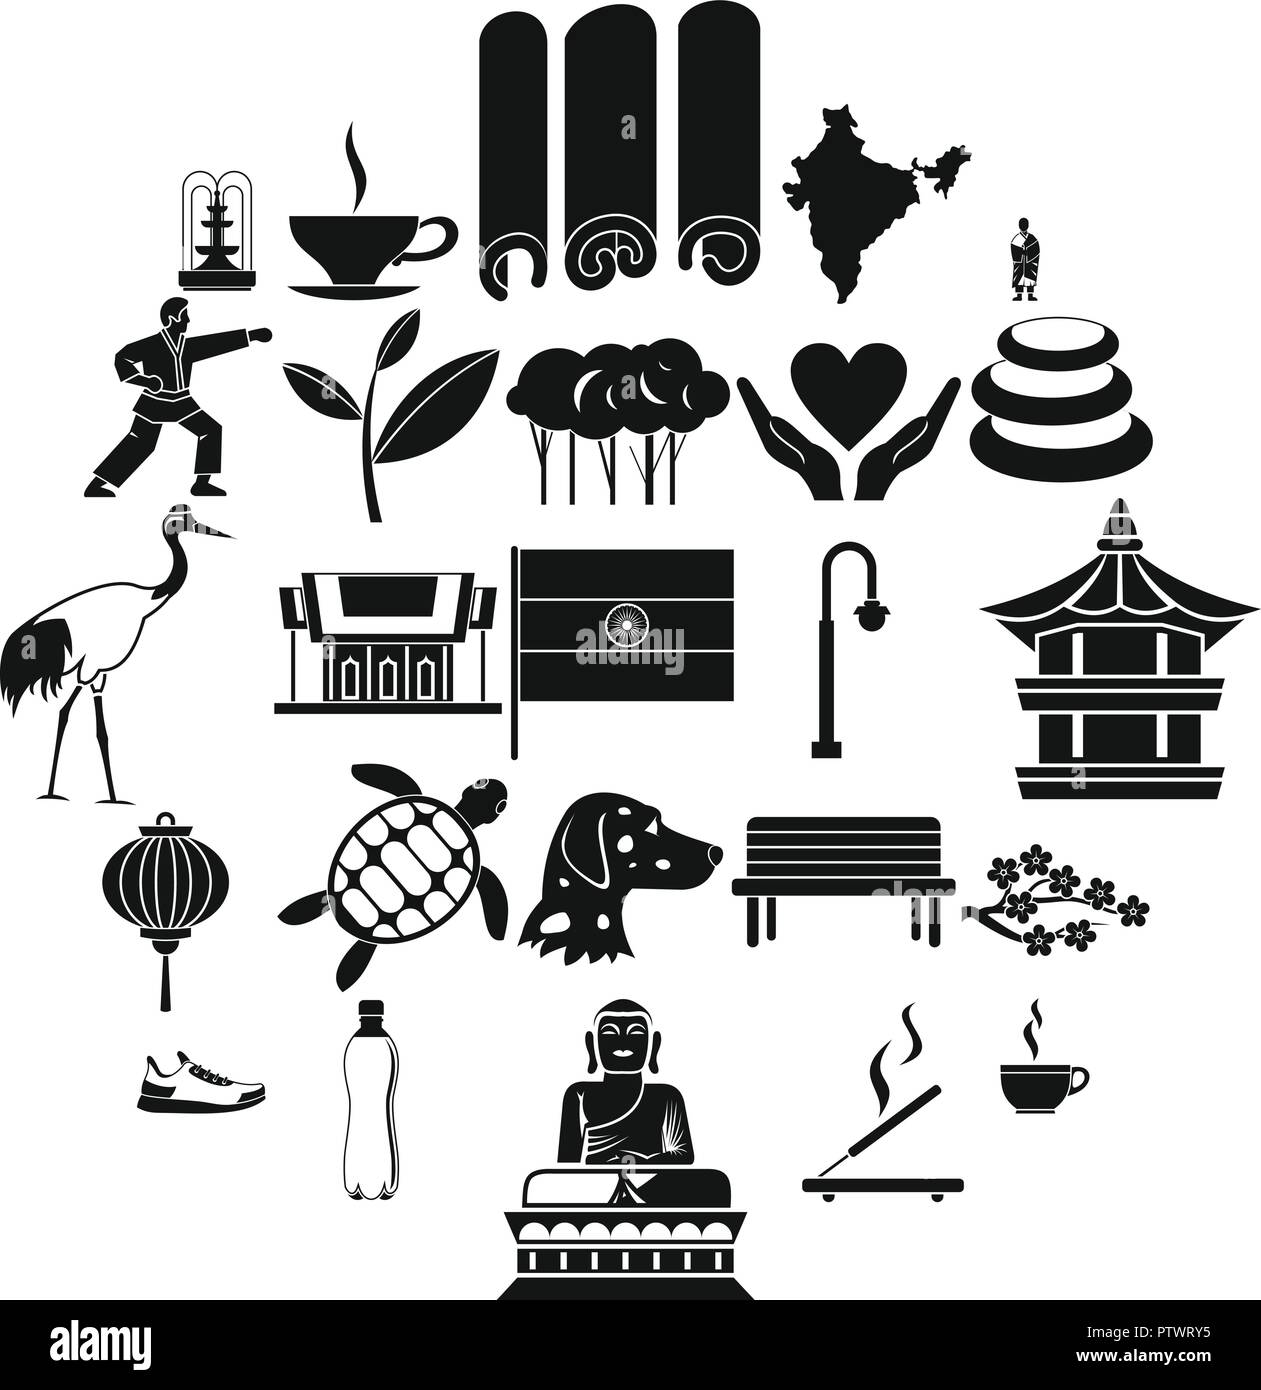 Iconos de artes marciales, estilo sencillo Ilustración del Vector